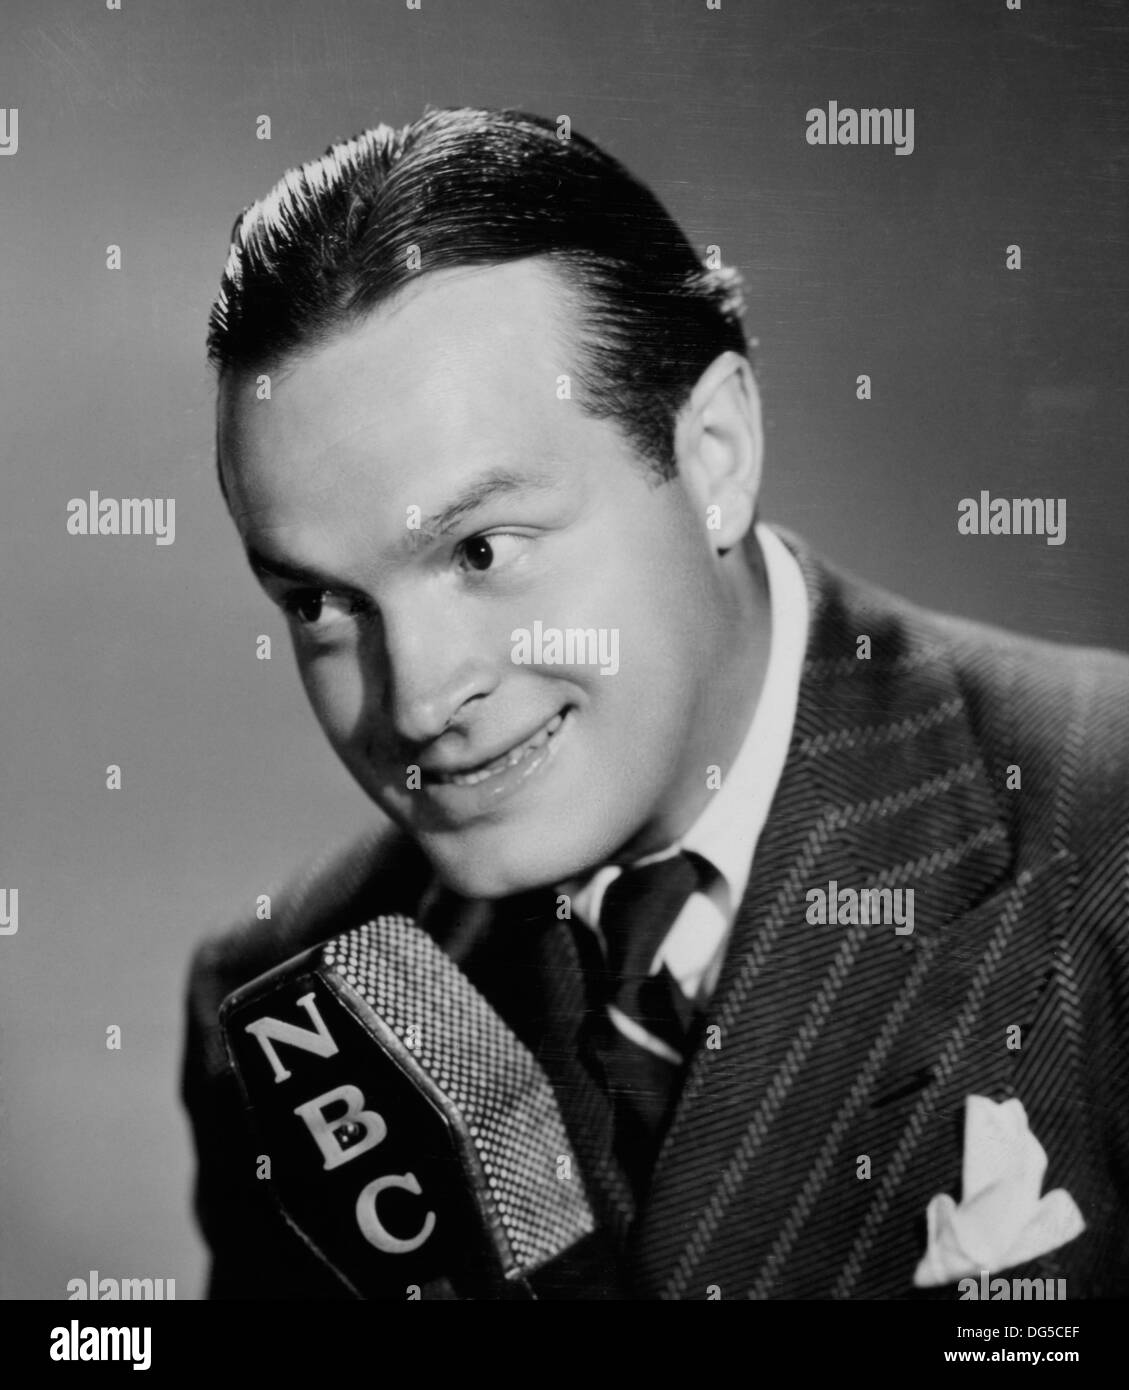 Bob Hope, Werbung Portrait für sein Radio Programm", die pepsodent Show Starring Bob Hope', NBC, 1940 Stockfoto